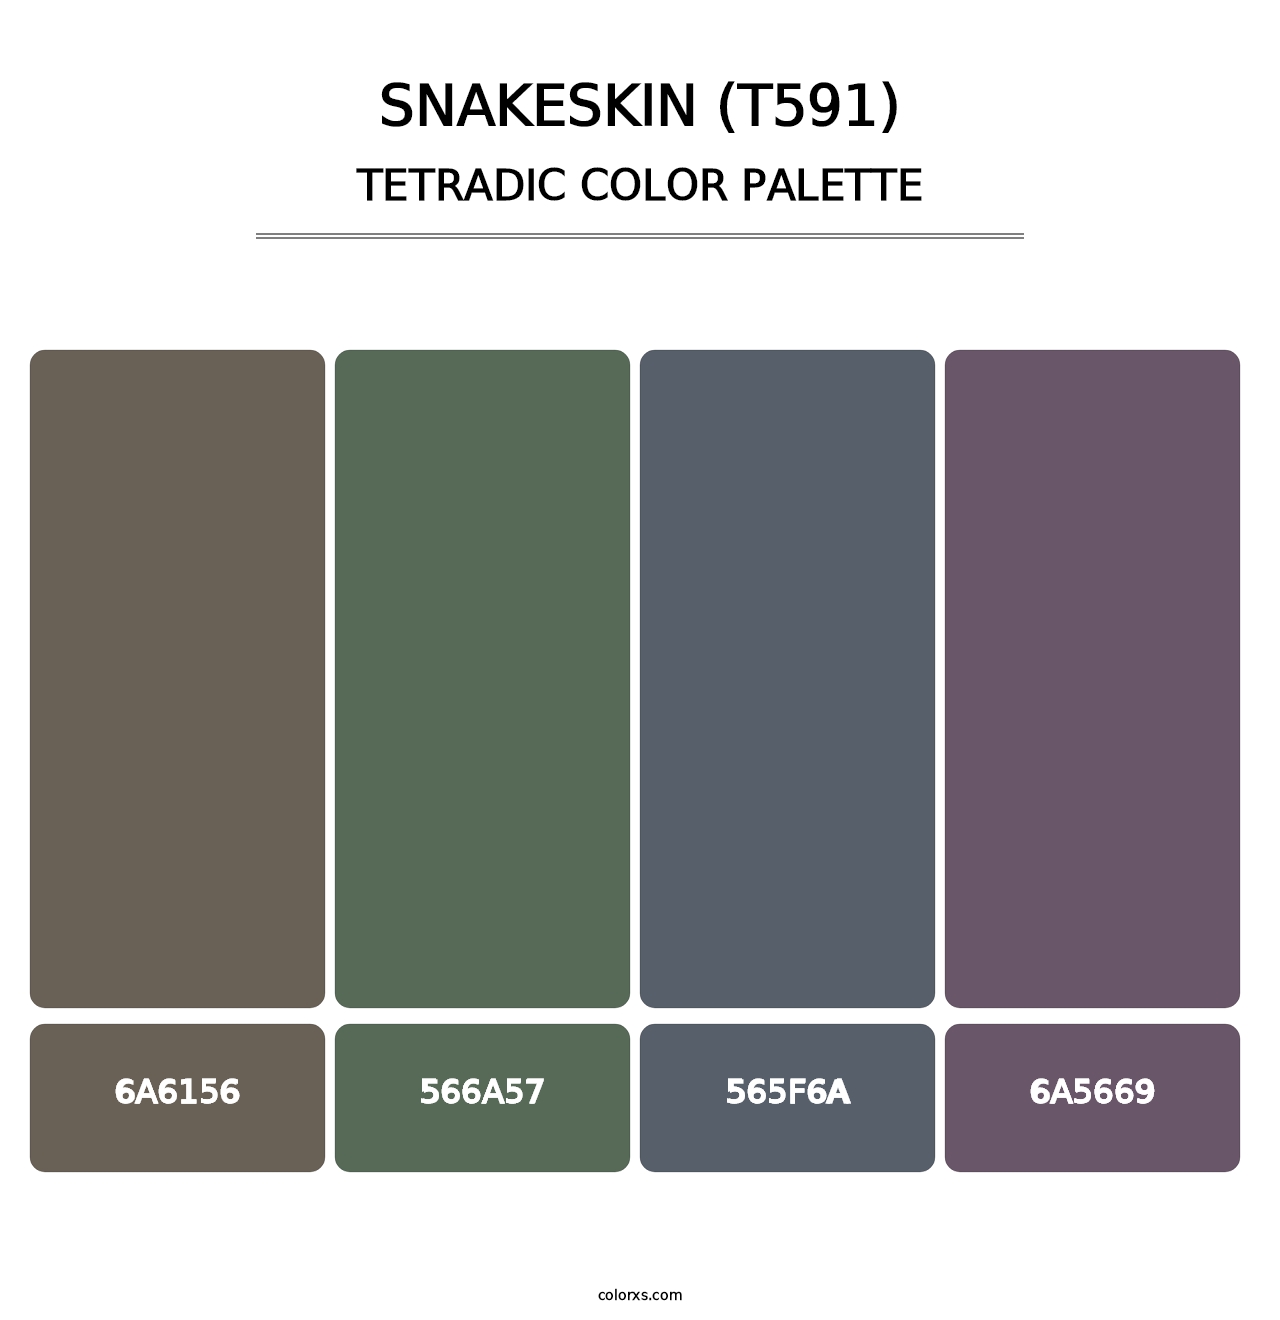 Snakeskin (T591) - Tetradic Color Palette